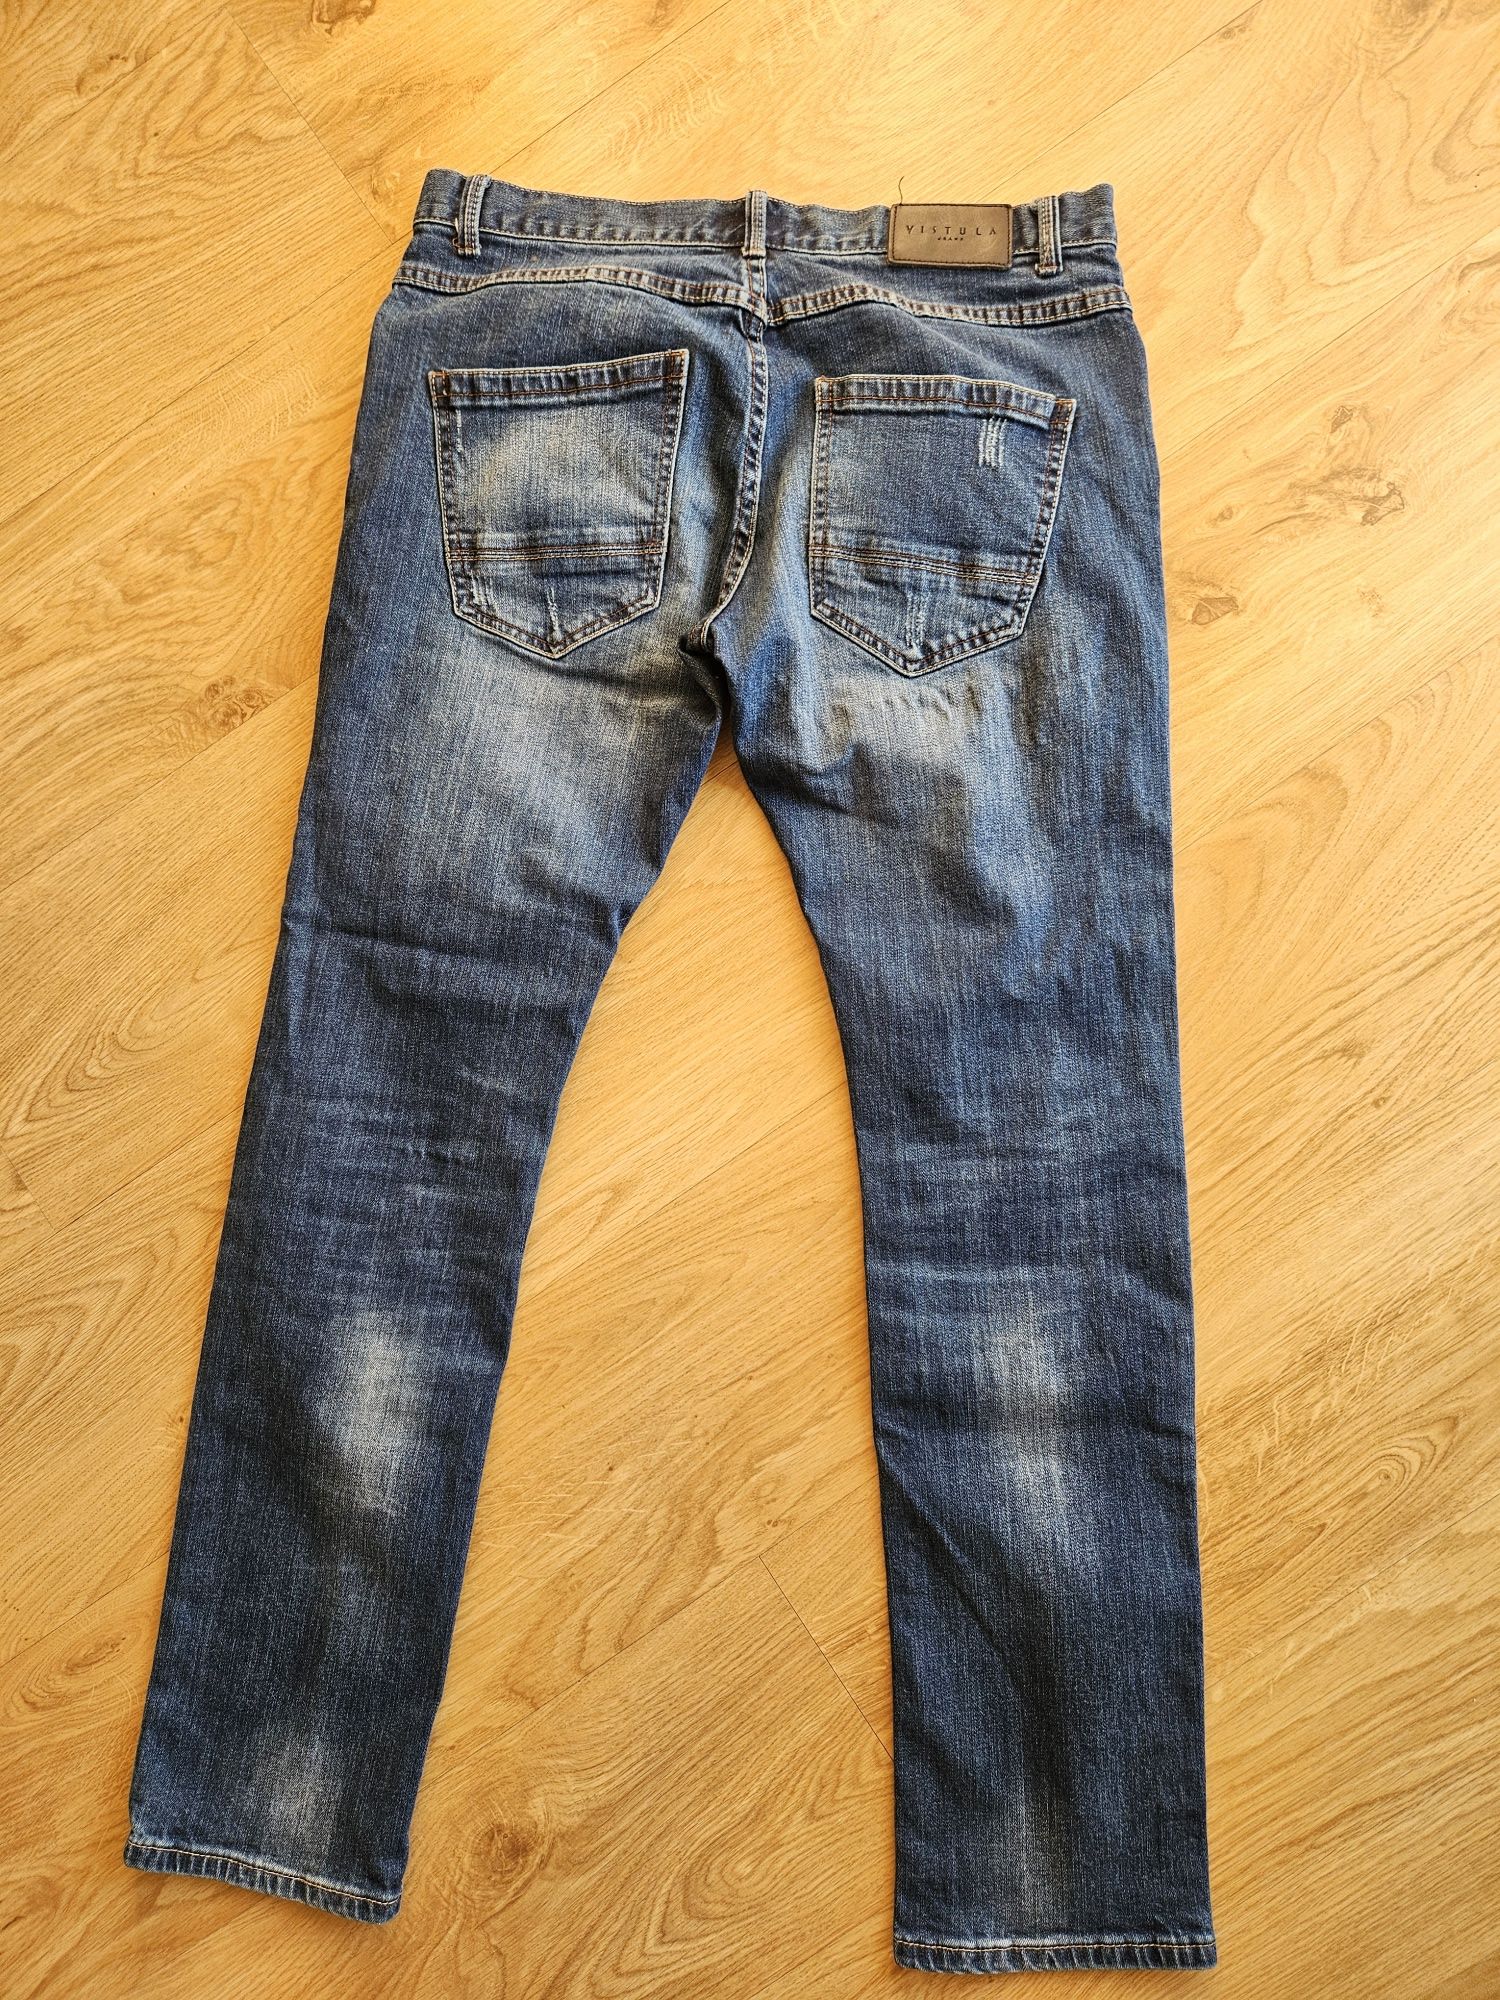 Spodnie męskie jeansowe VISTULA